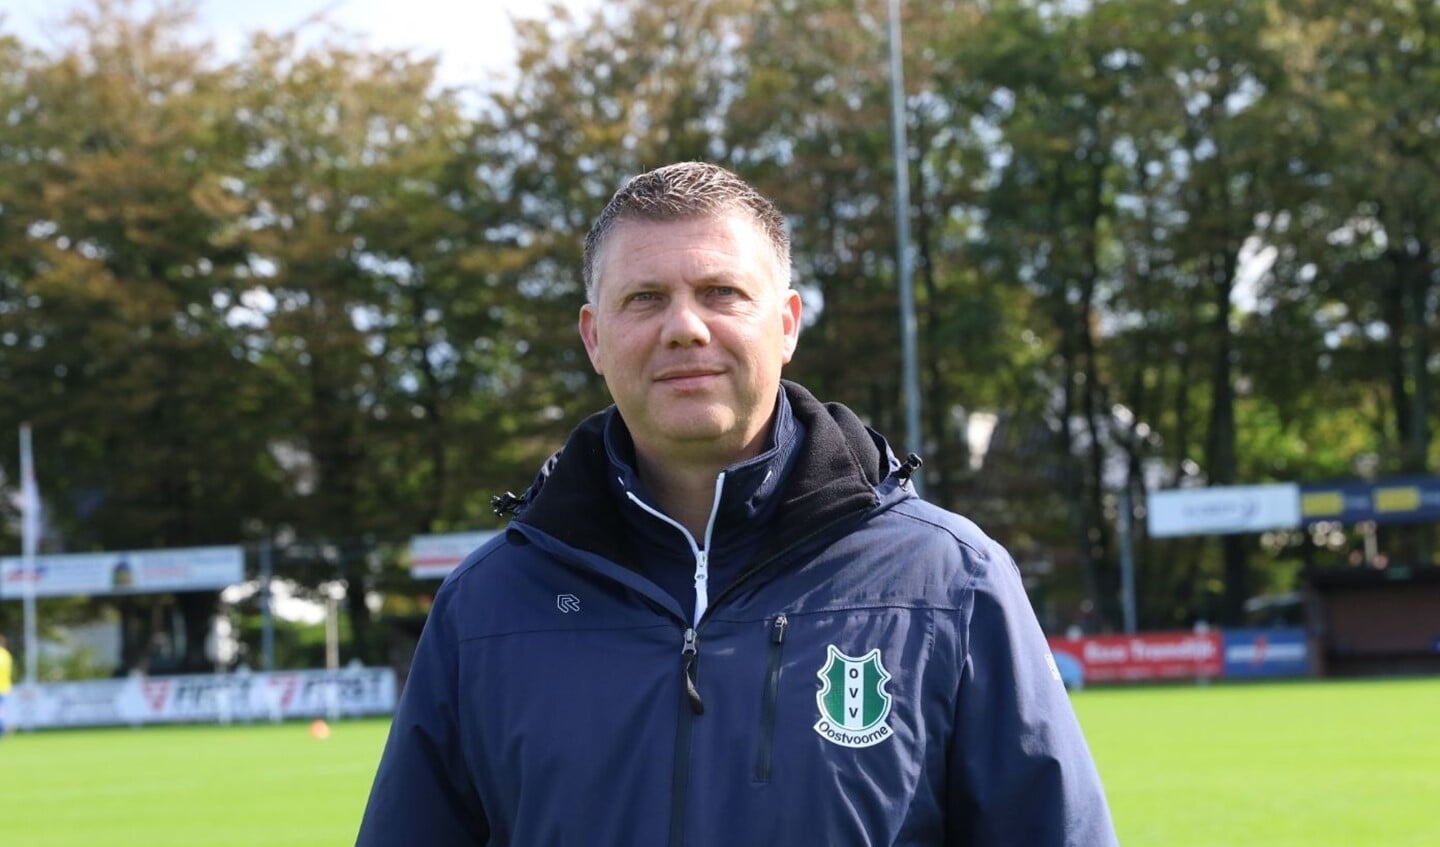 OVV-trainer Marcel Langeveld pleit ervoor om te hervatten als alle clubs evenveel duels hebben gespeeld. Archieffoto: Wil van Balen. 